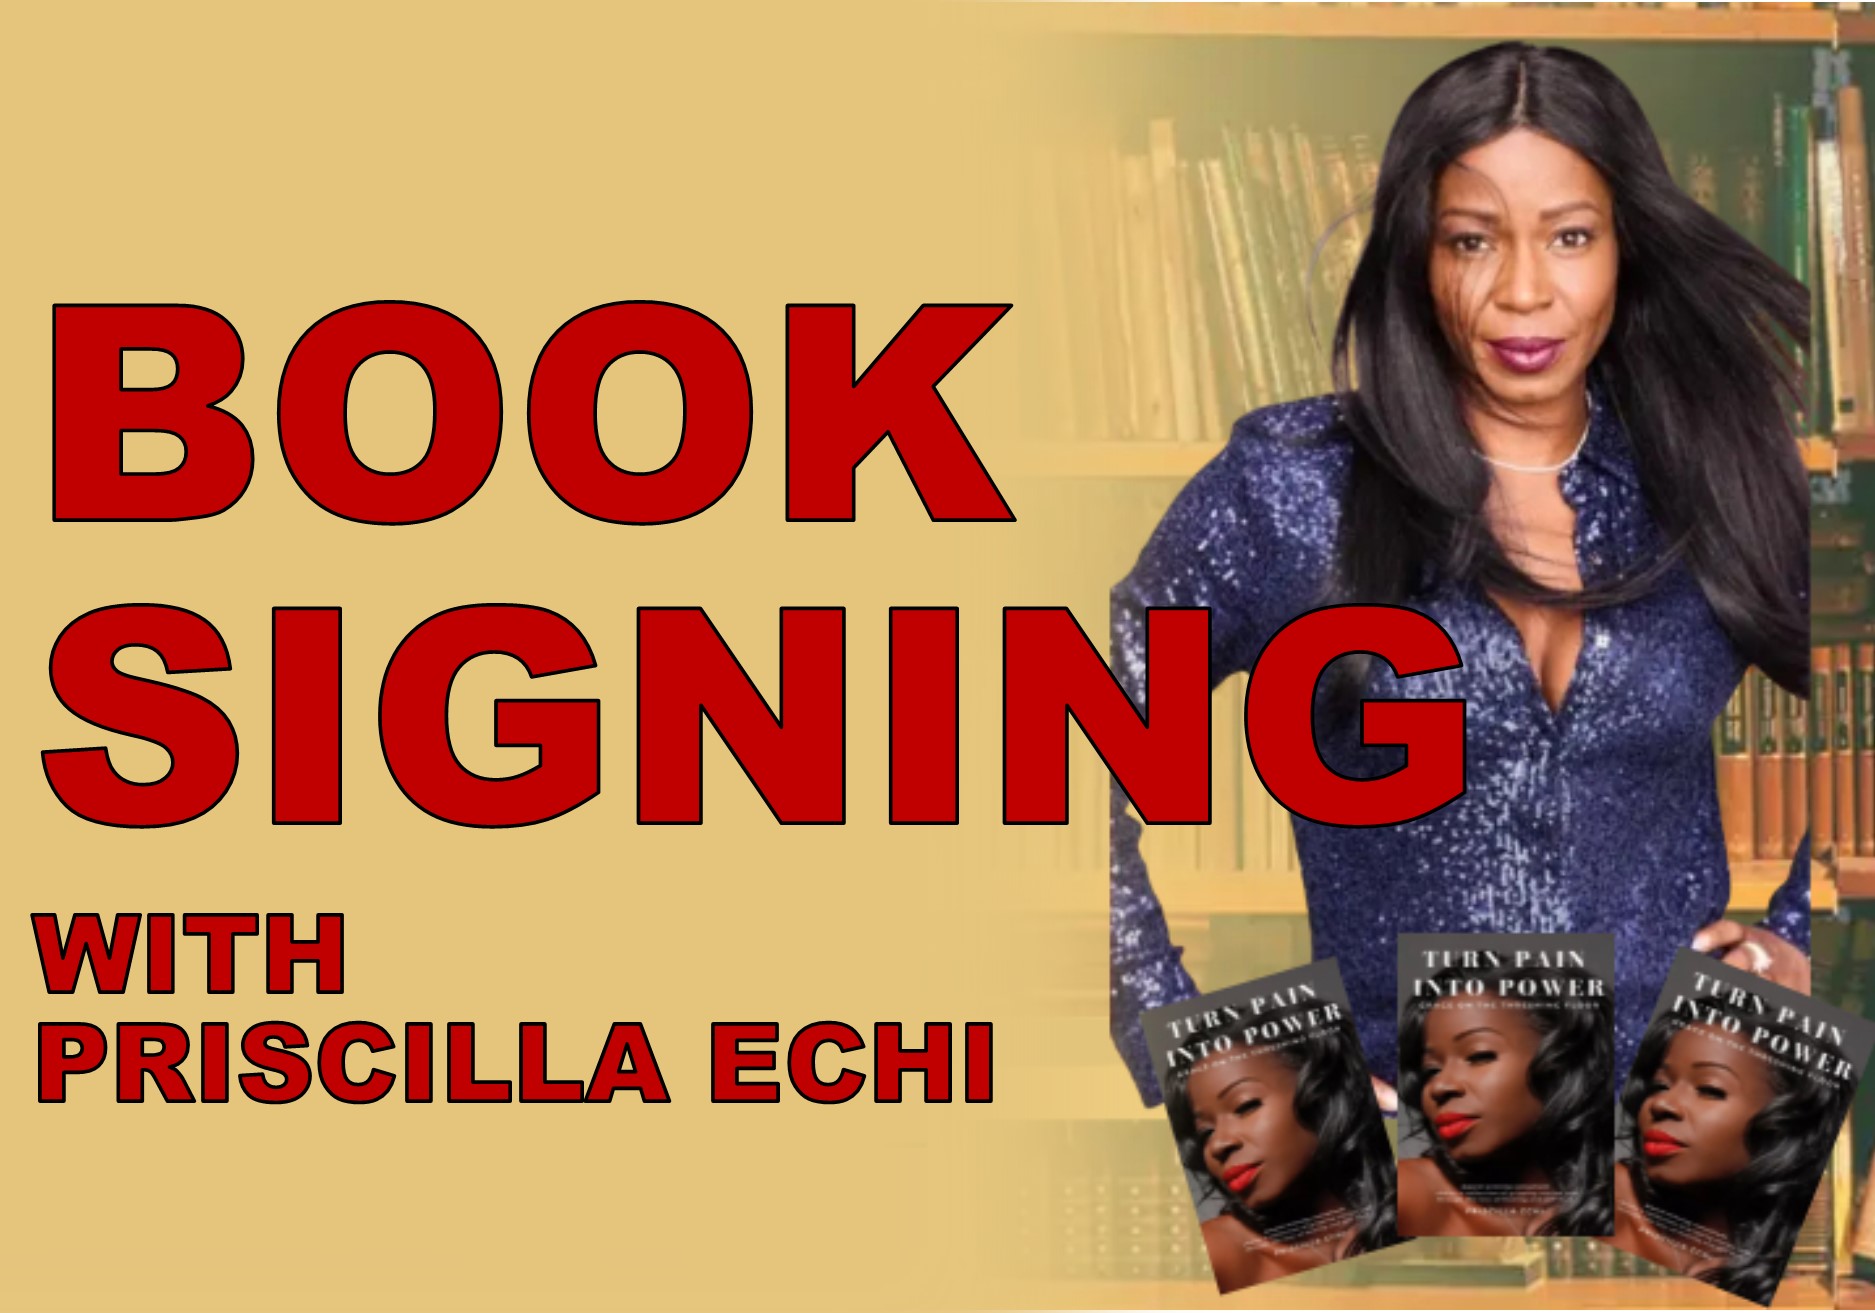 BOOK SIGNING WITH PRISCILLA ECHI